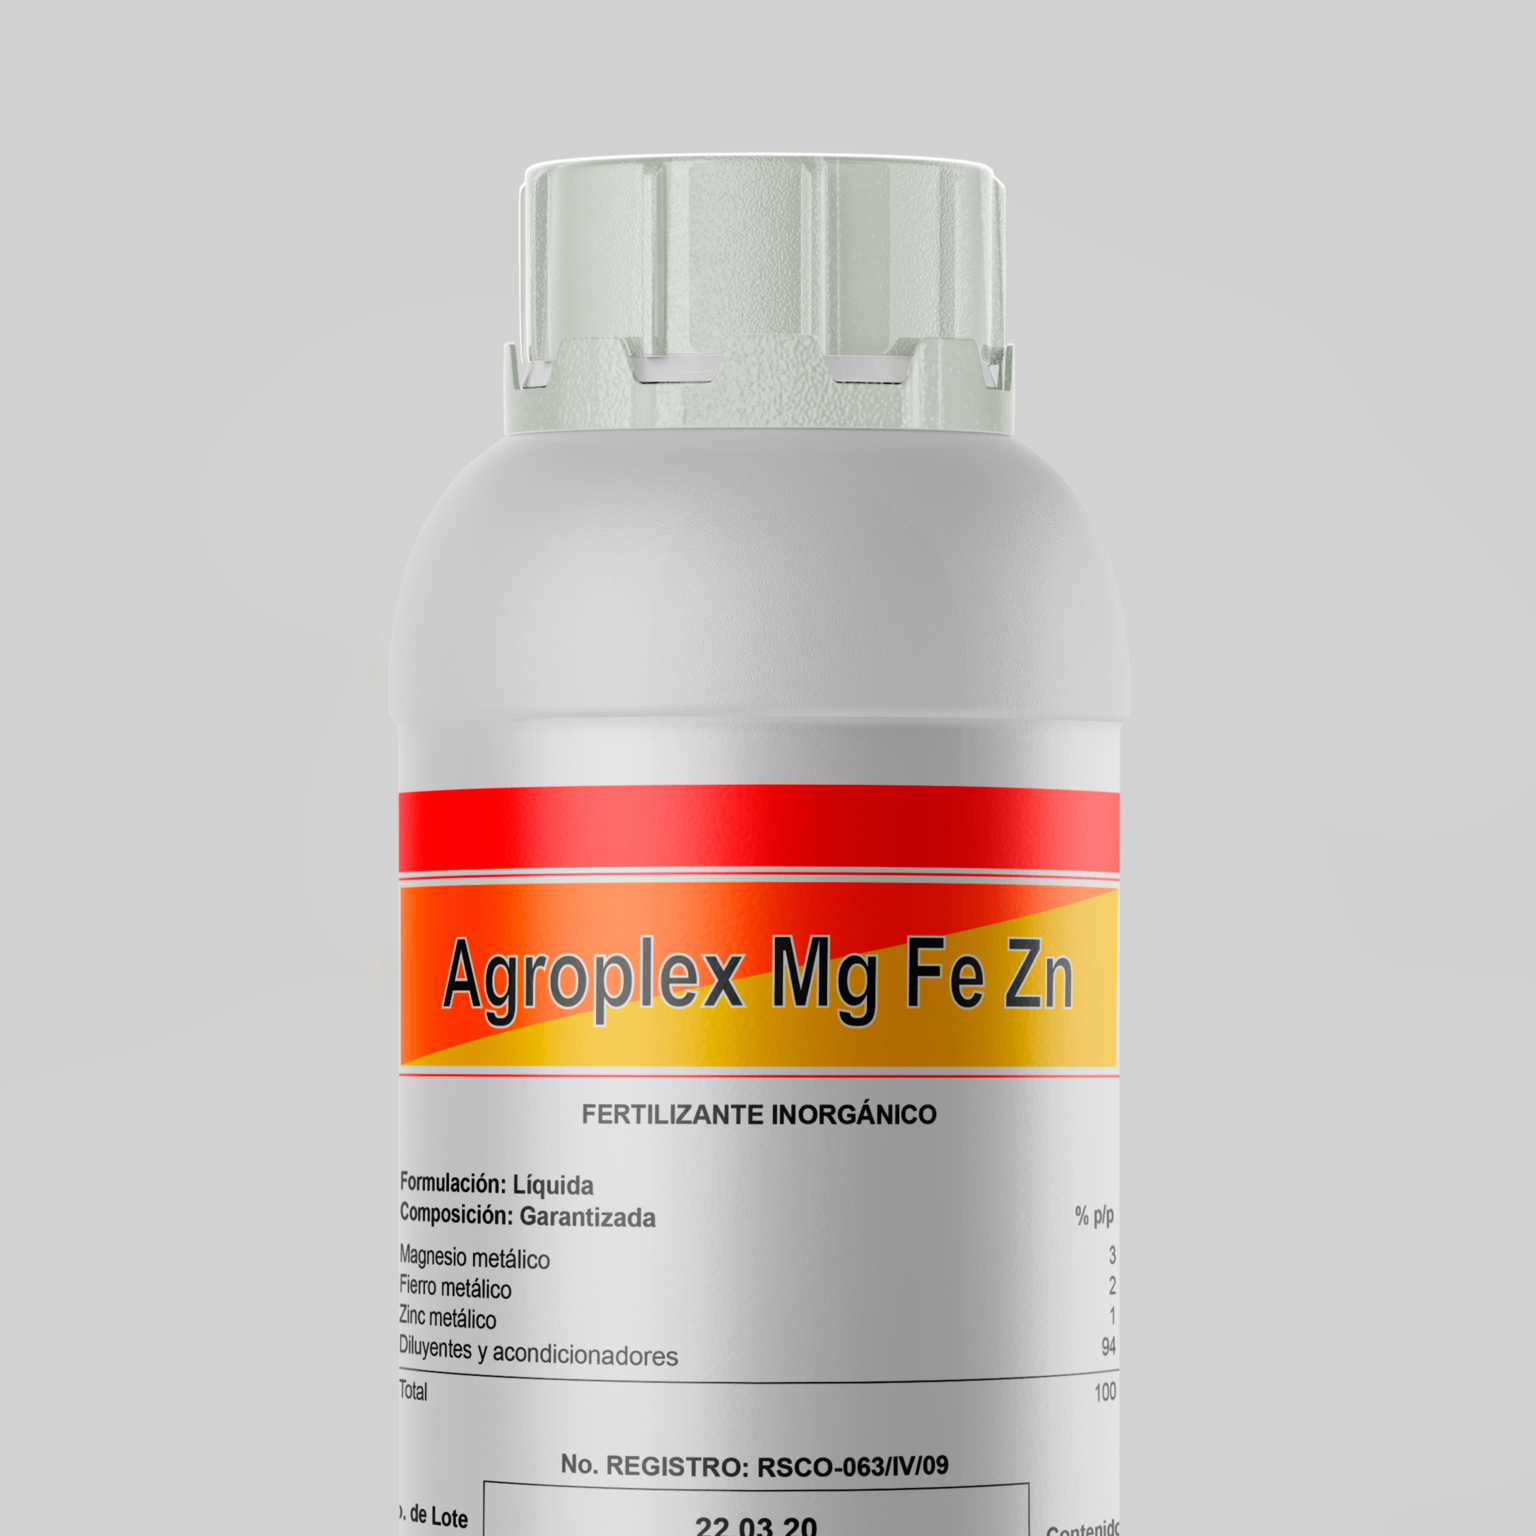 Agroplex Mg Fe Zn